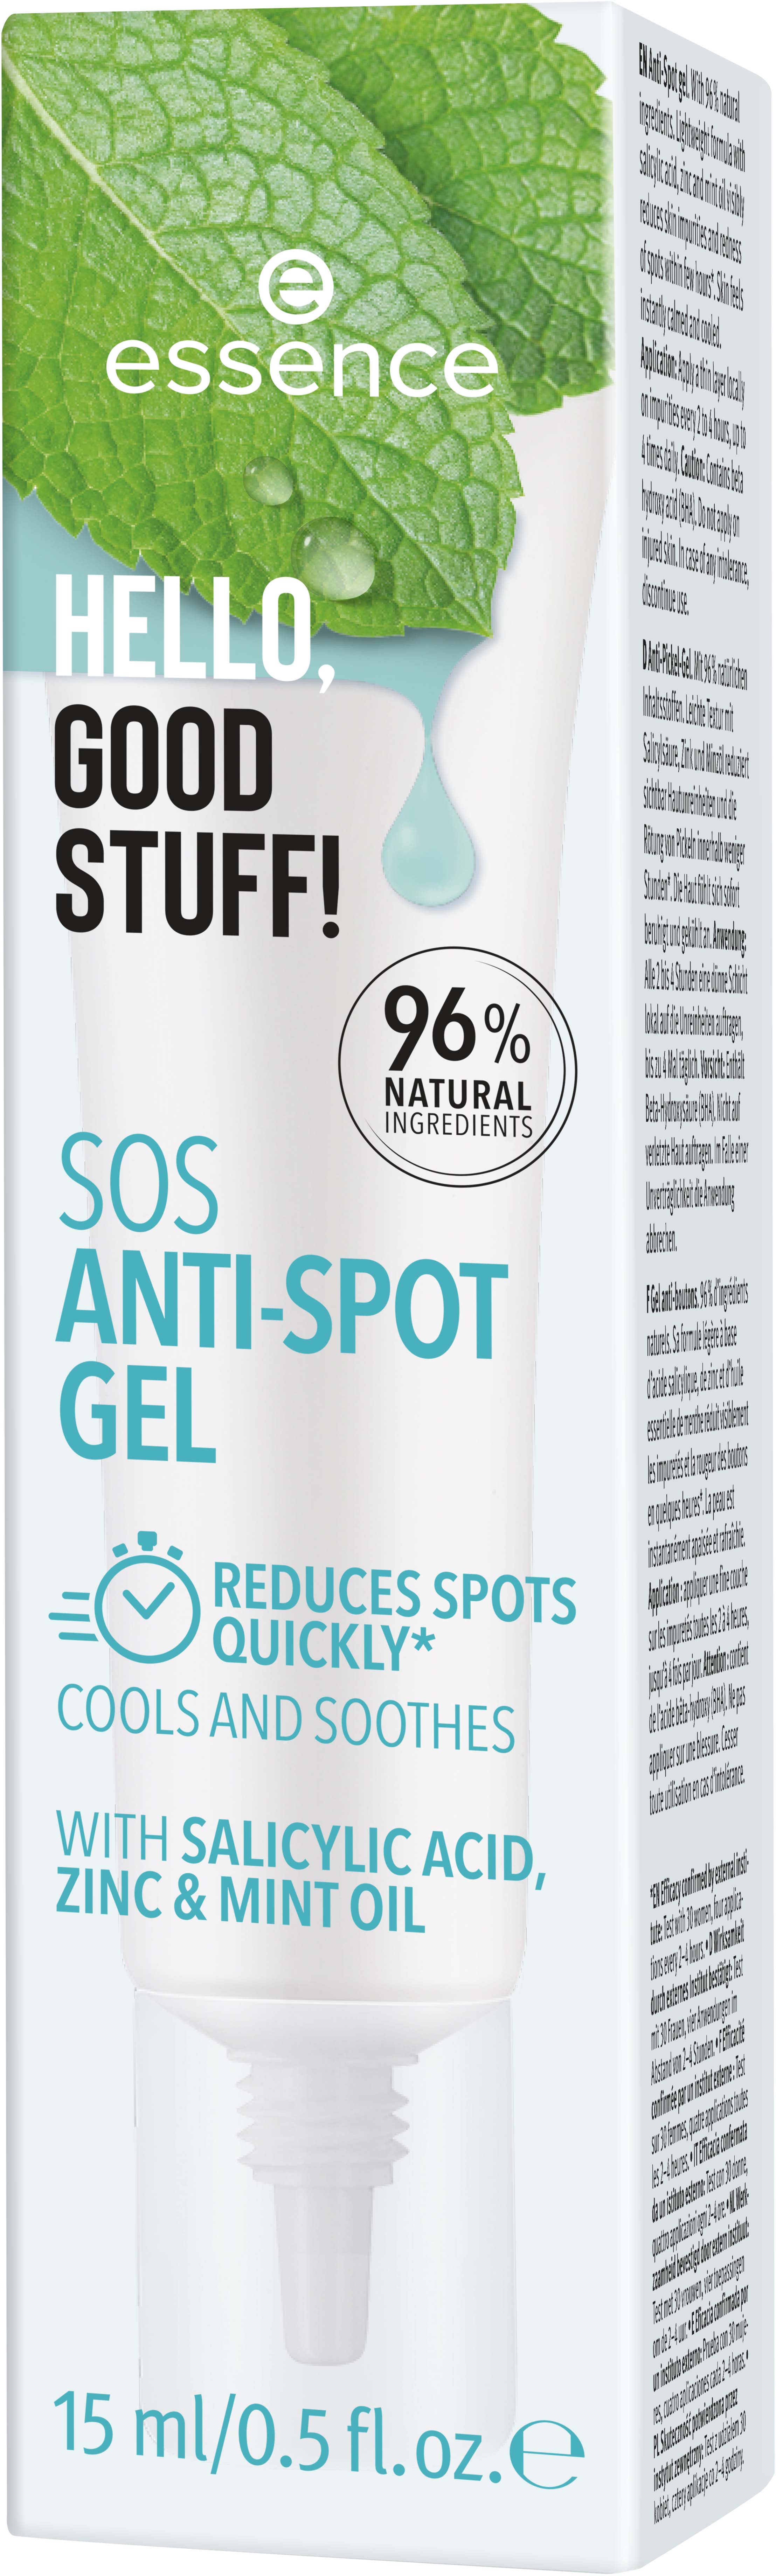 Sos Anti-Spot Good Gel 15 essence ml Stuff! Hello,